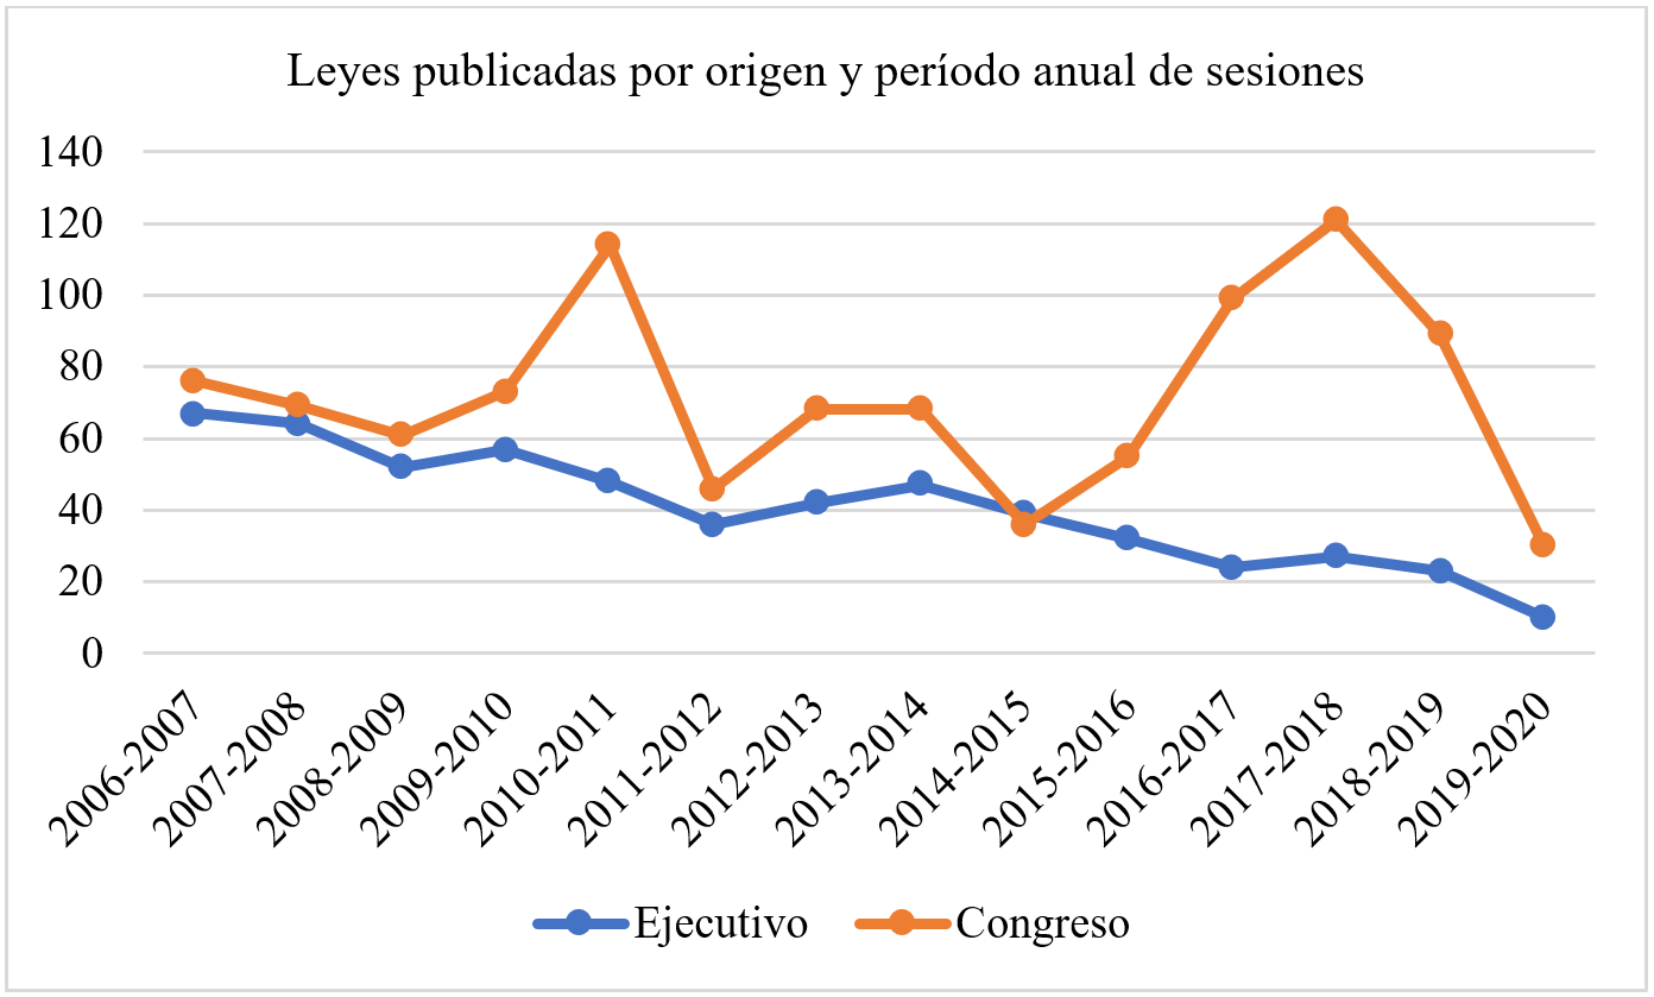 Leyes publicadas por origen y por período anual de sesiones parlamentarias, 2006-2020